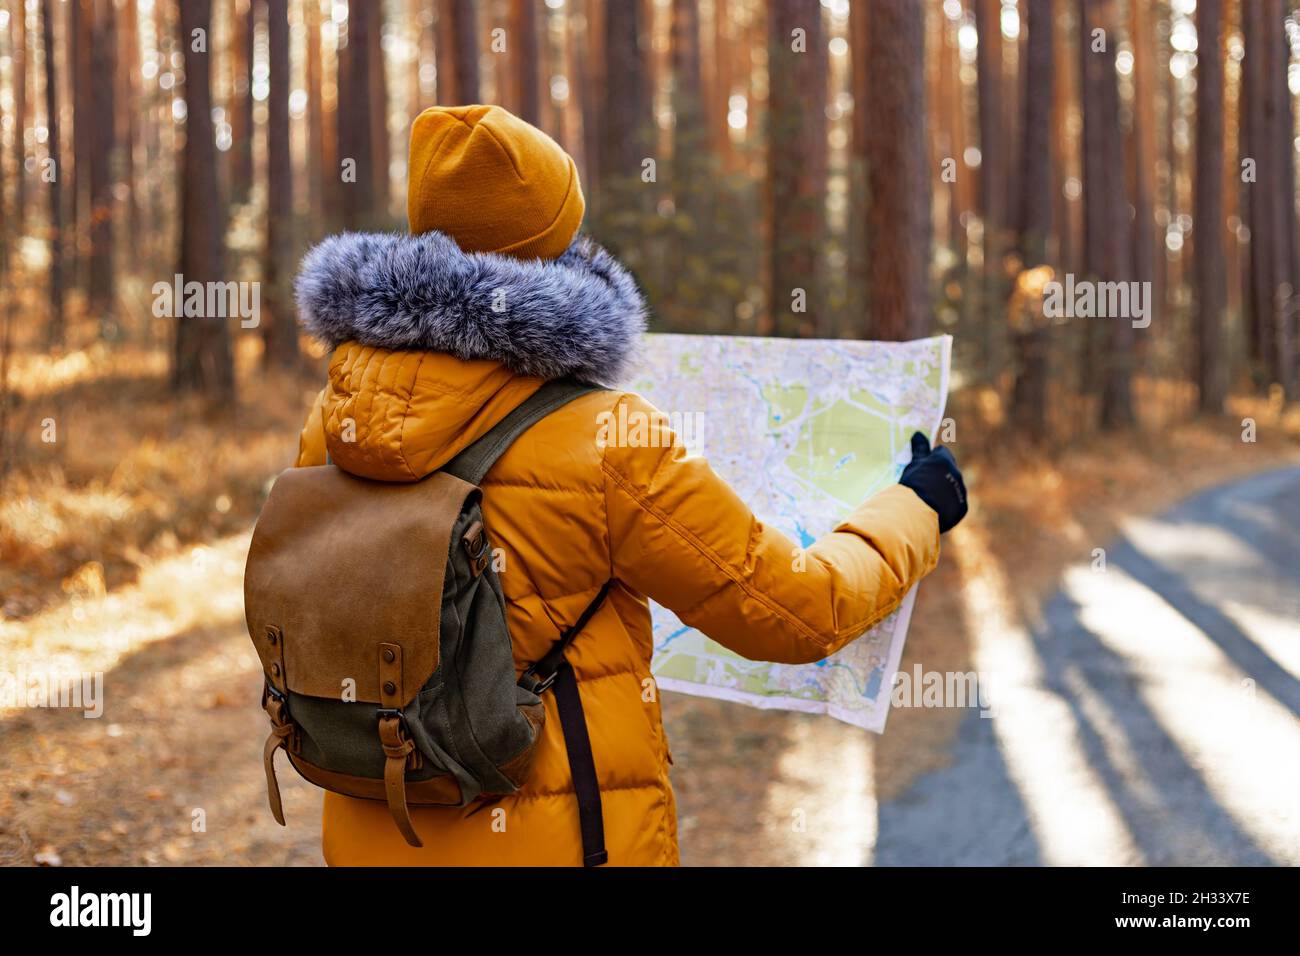 Jeune femme randonneur dans une veste chaude orange.Une femme marche dans un parc de pins d'automne avec un sac à dos.Elle regarde la carte qu'elle tient entre ses mains.Hik Banque D'Images